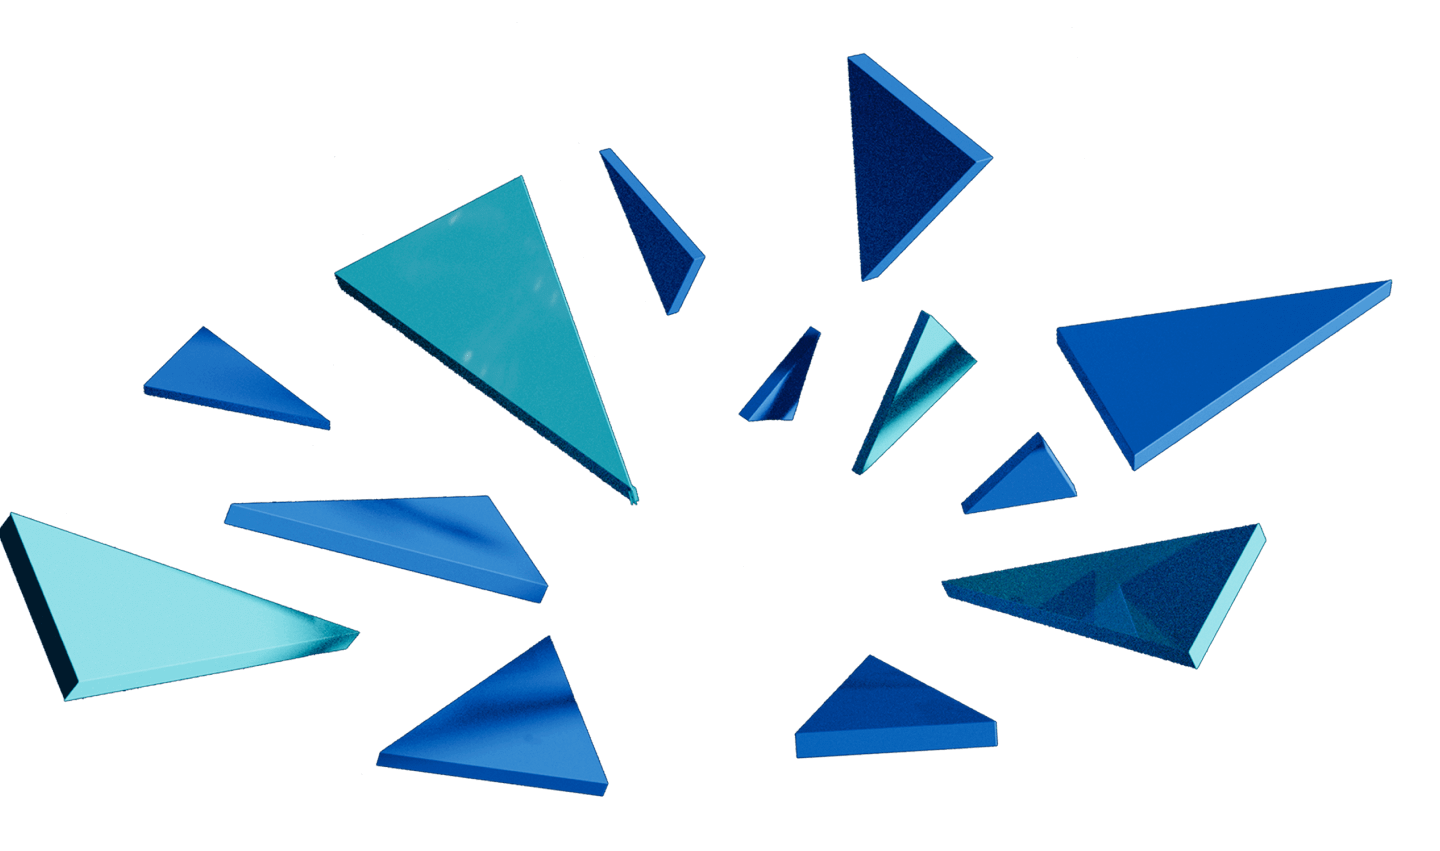 imagens triangulares com variações de azul parecendo vidros explodindo